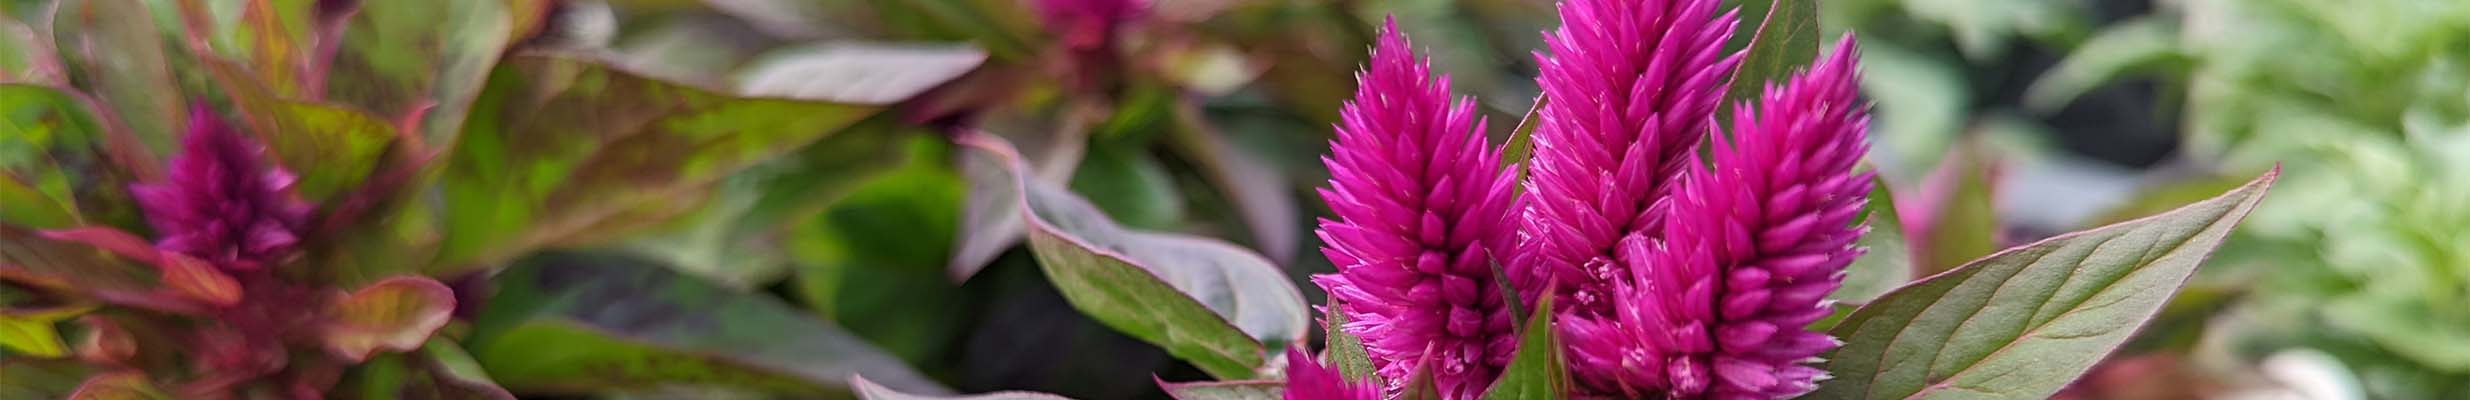 A beatufiul pink flower